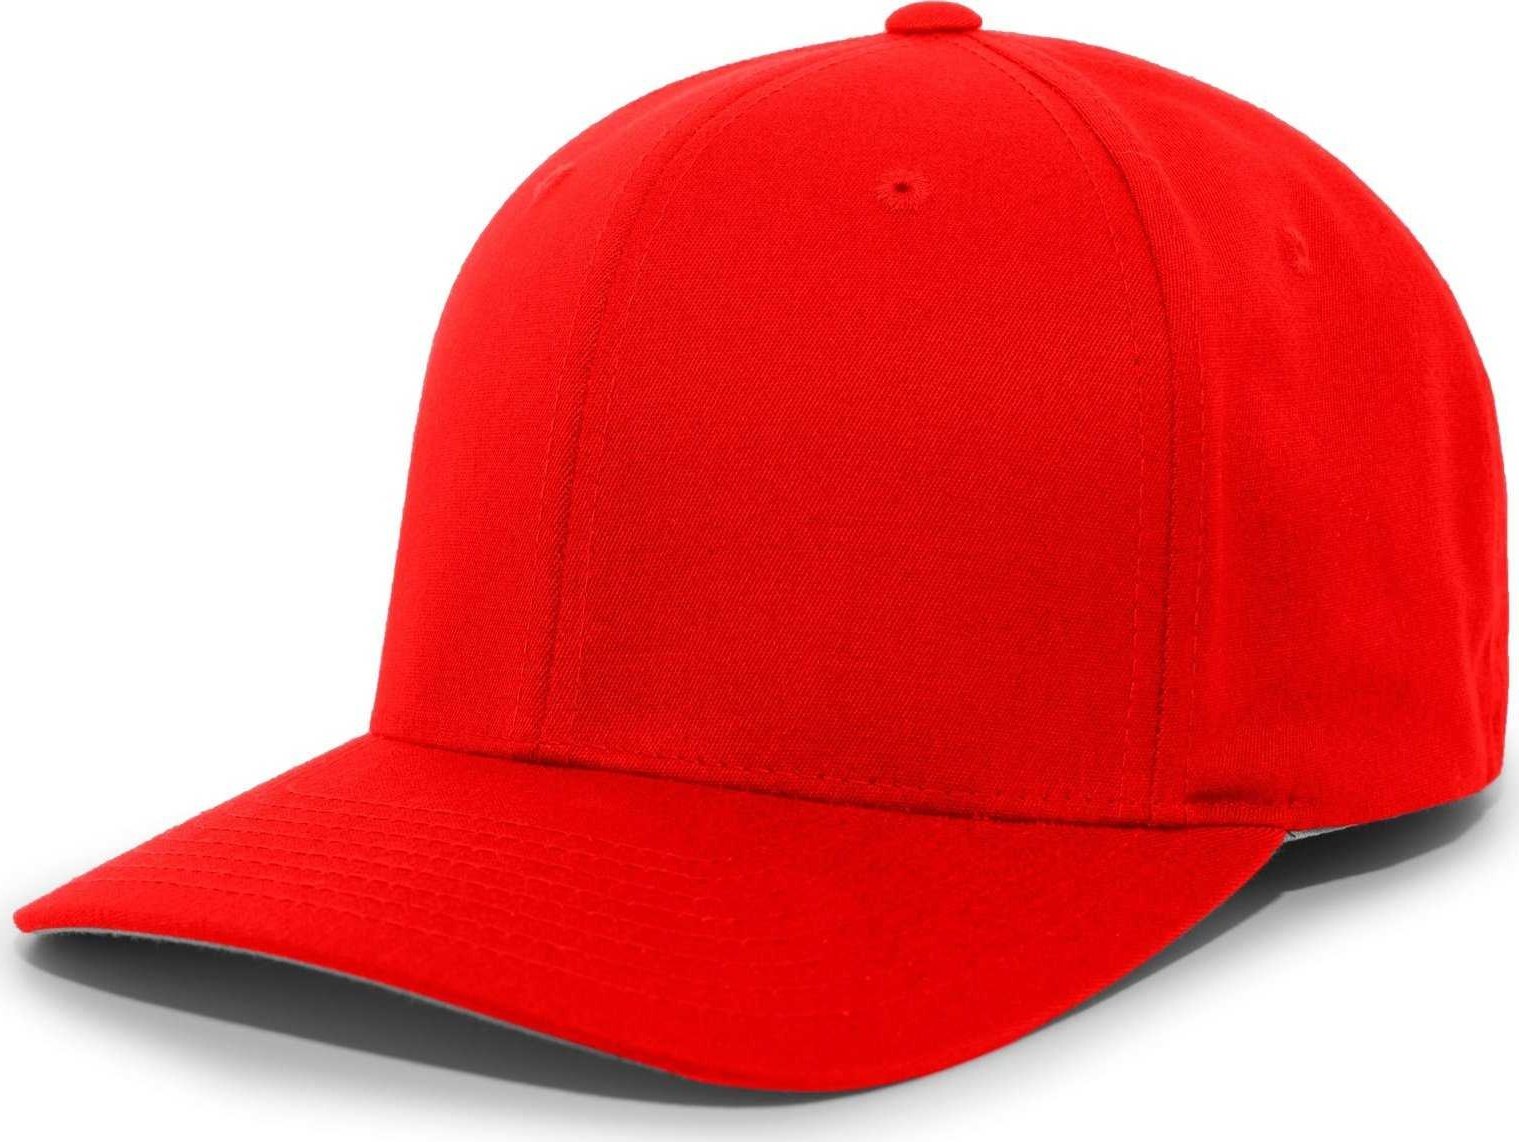 Pacific Headwear 430C Cotton-Poly Flexfit Cap - Red - HIT a Double